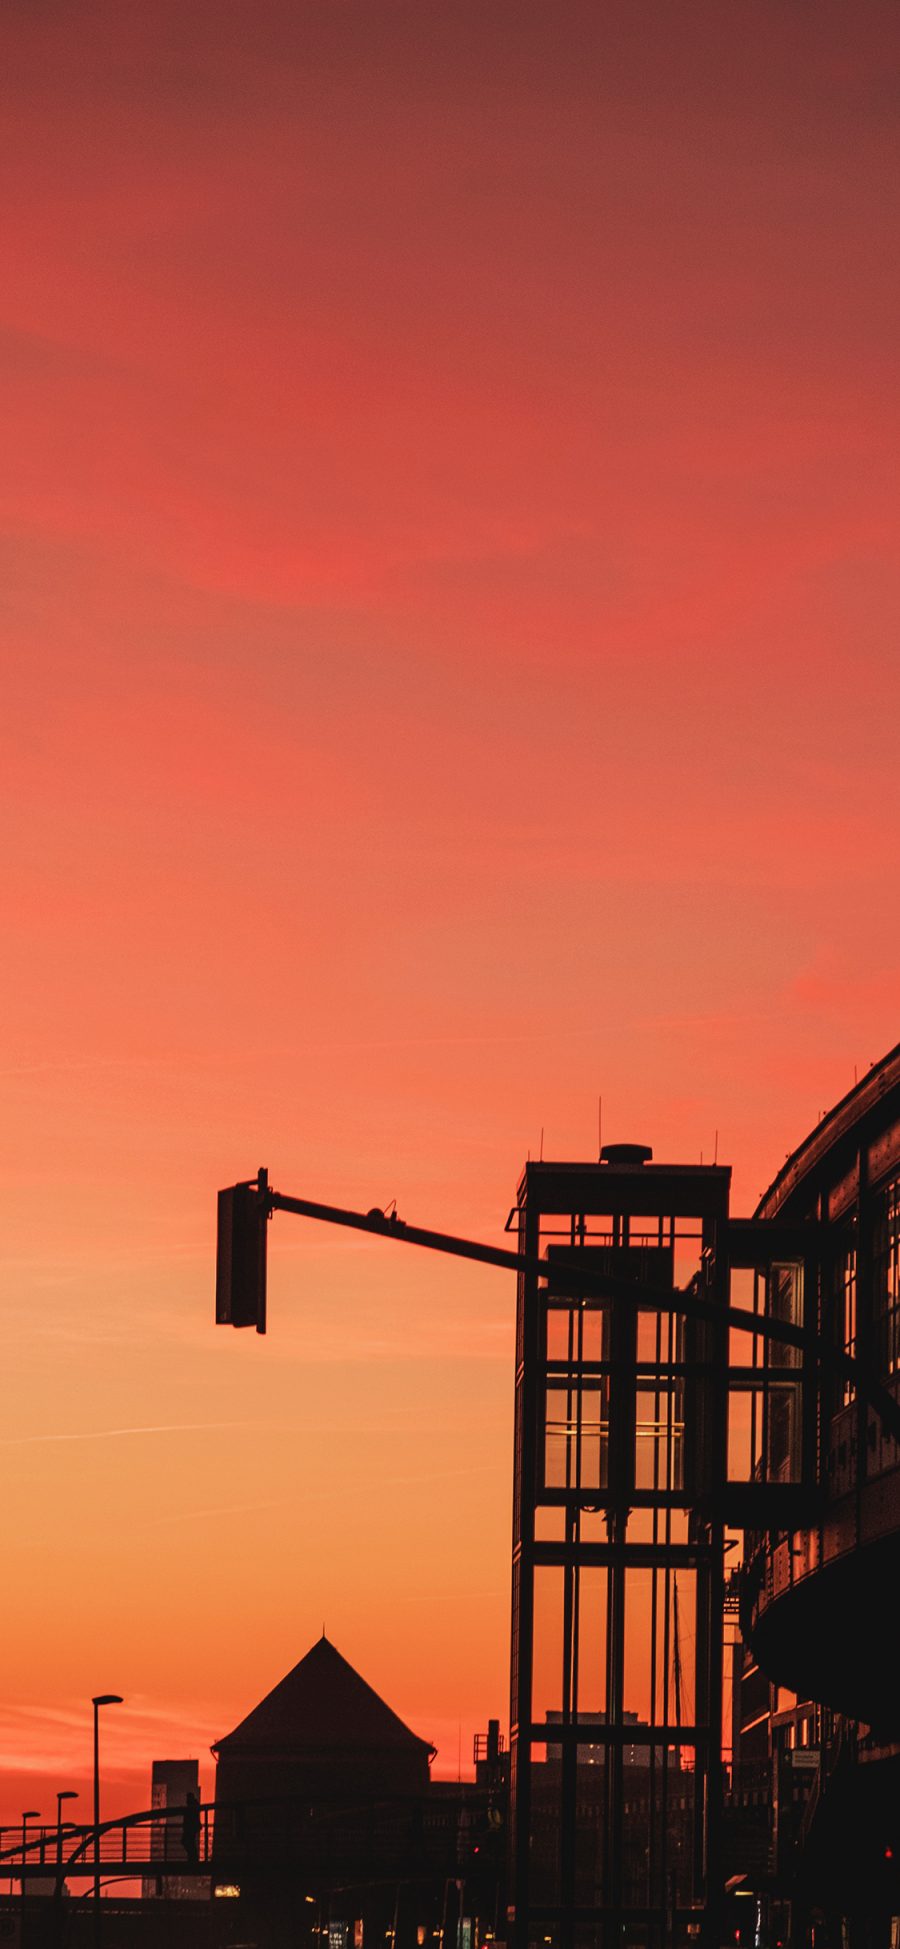 [2436×1125]城市 建筑 夕阳美景 红霞 苹果手机壁纸图片